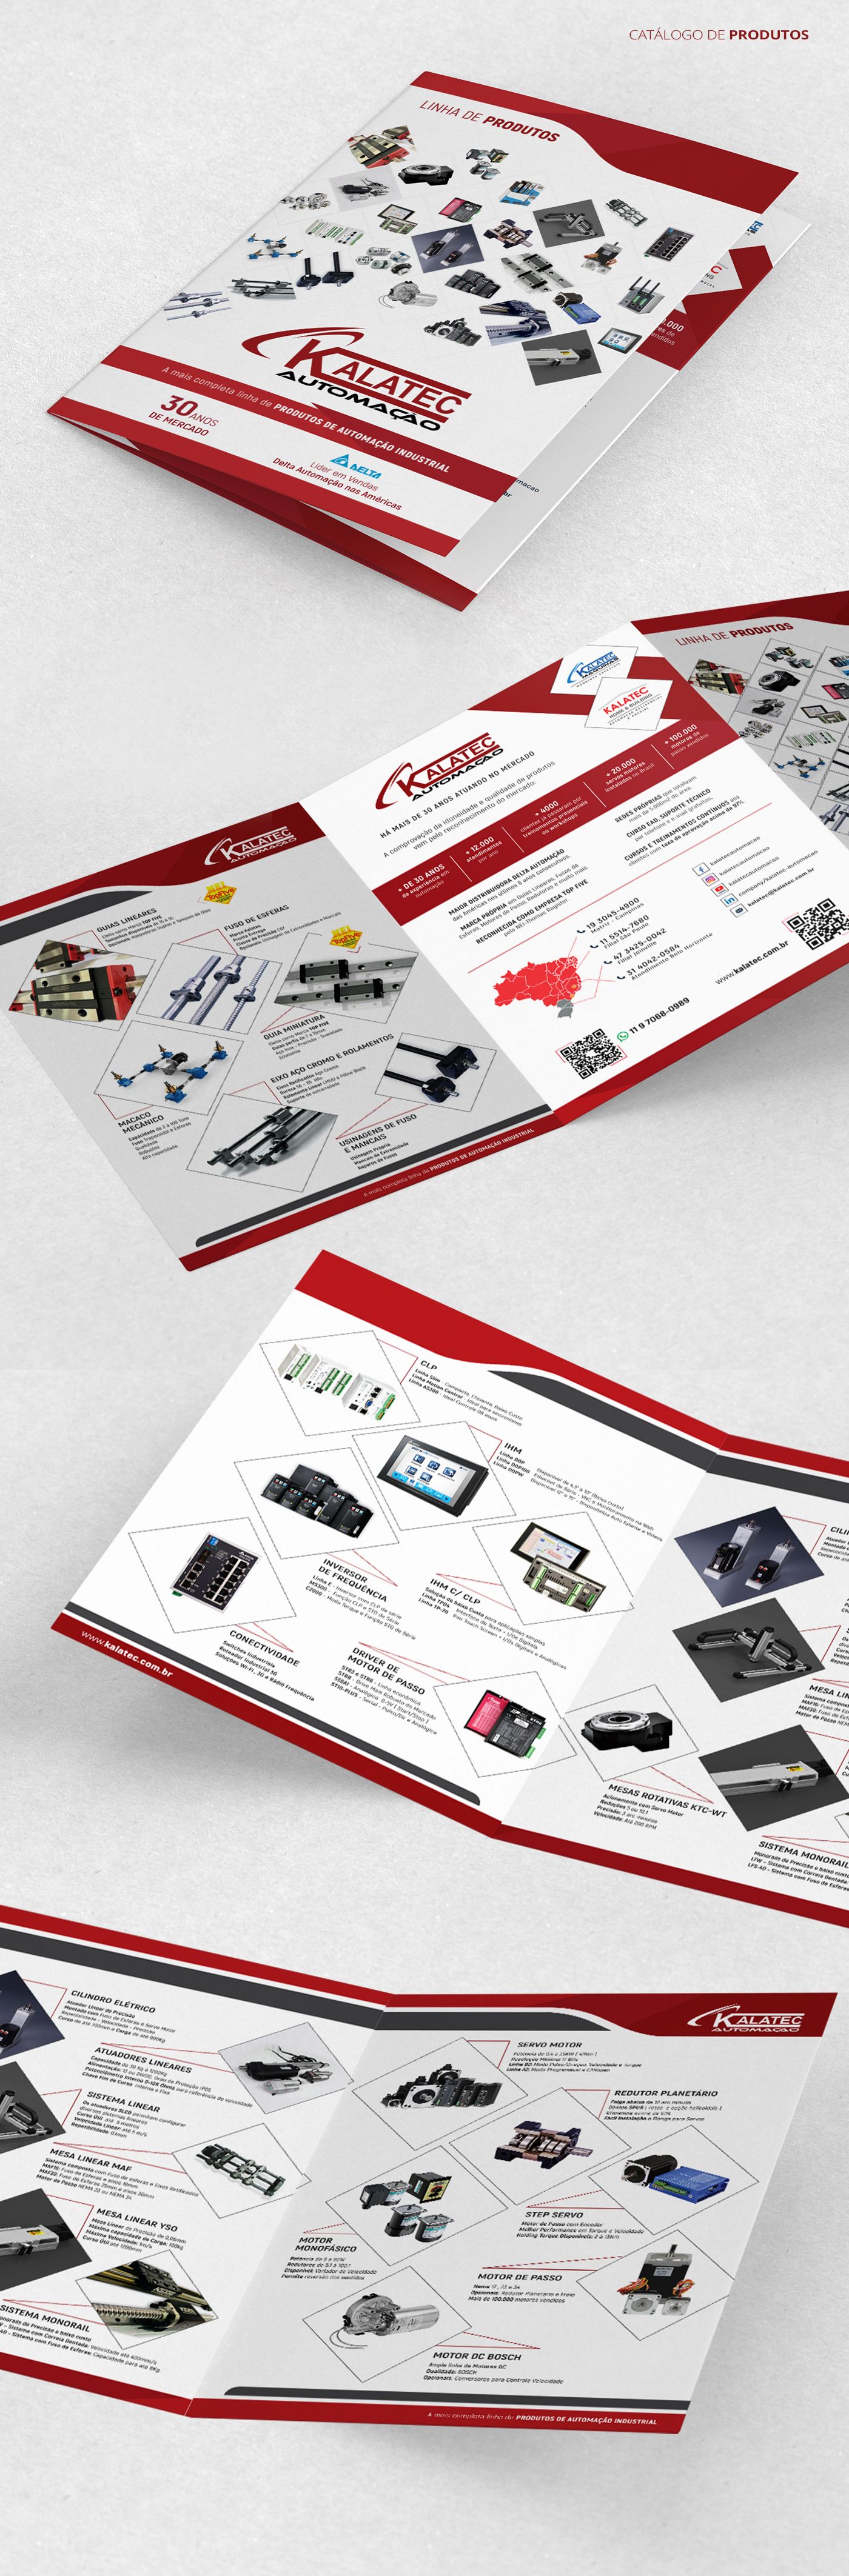 Catálogo de produtos de automação desenvolvido para a empresa Kalatec Automação